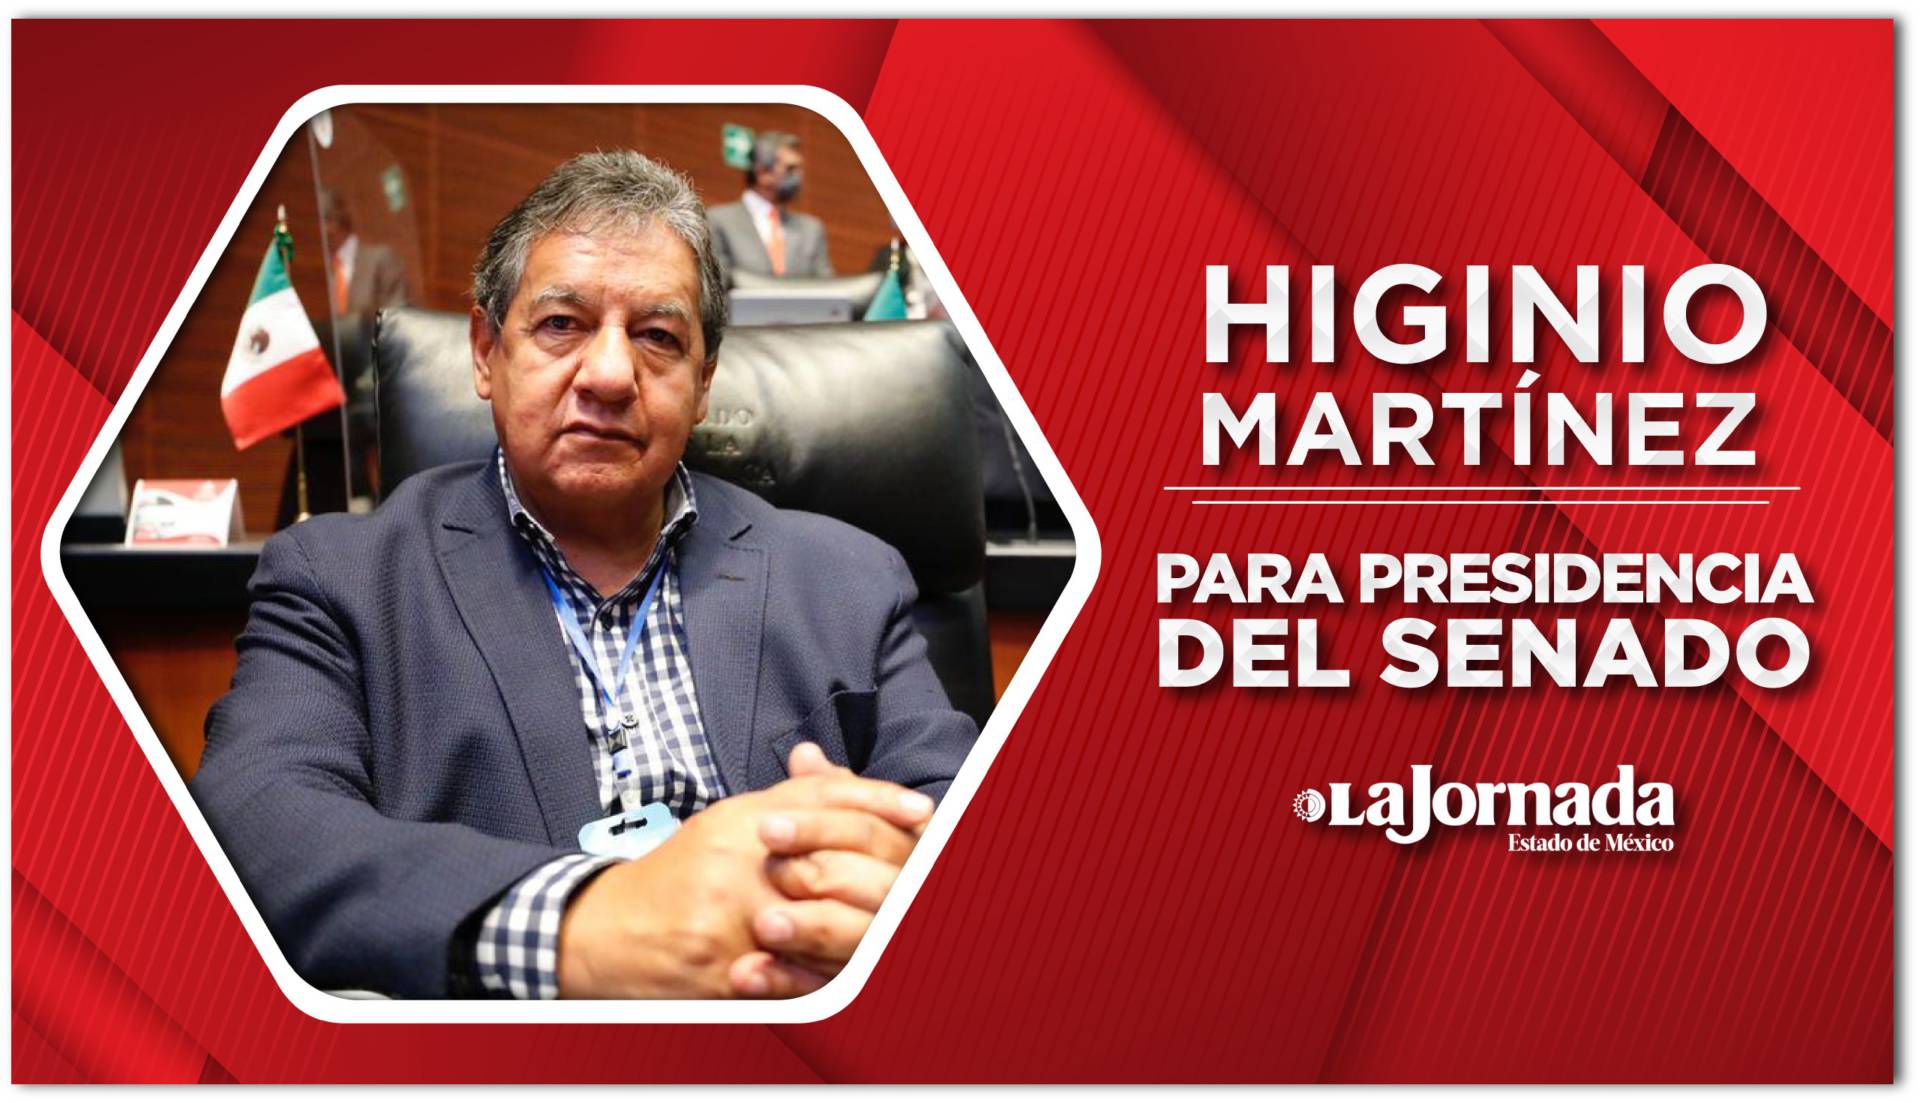 Higinio Martínez Lucha Por La Presidencia Del Senado La Jornada Estado De México 6149